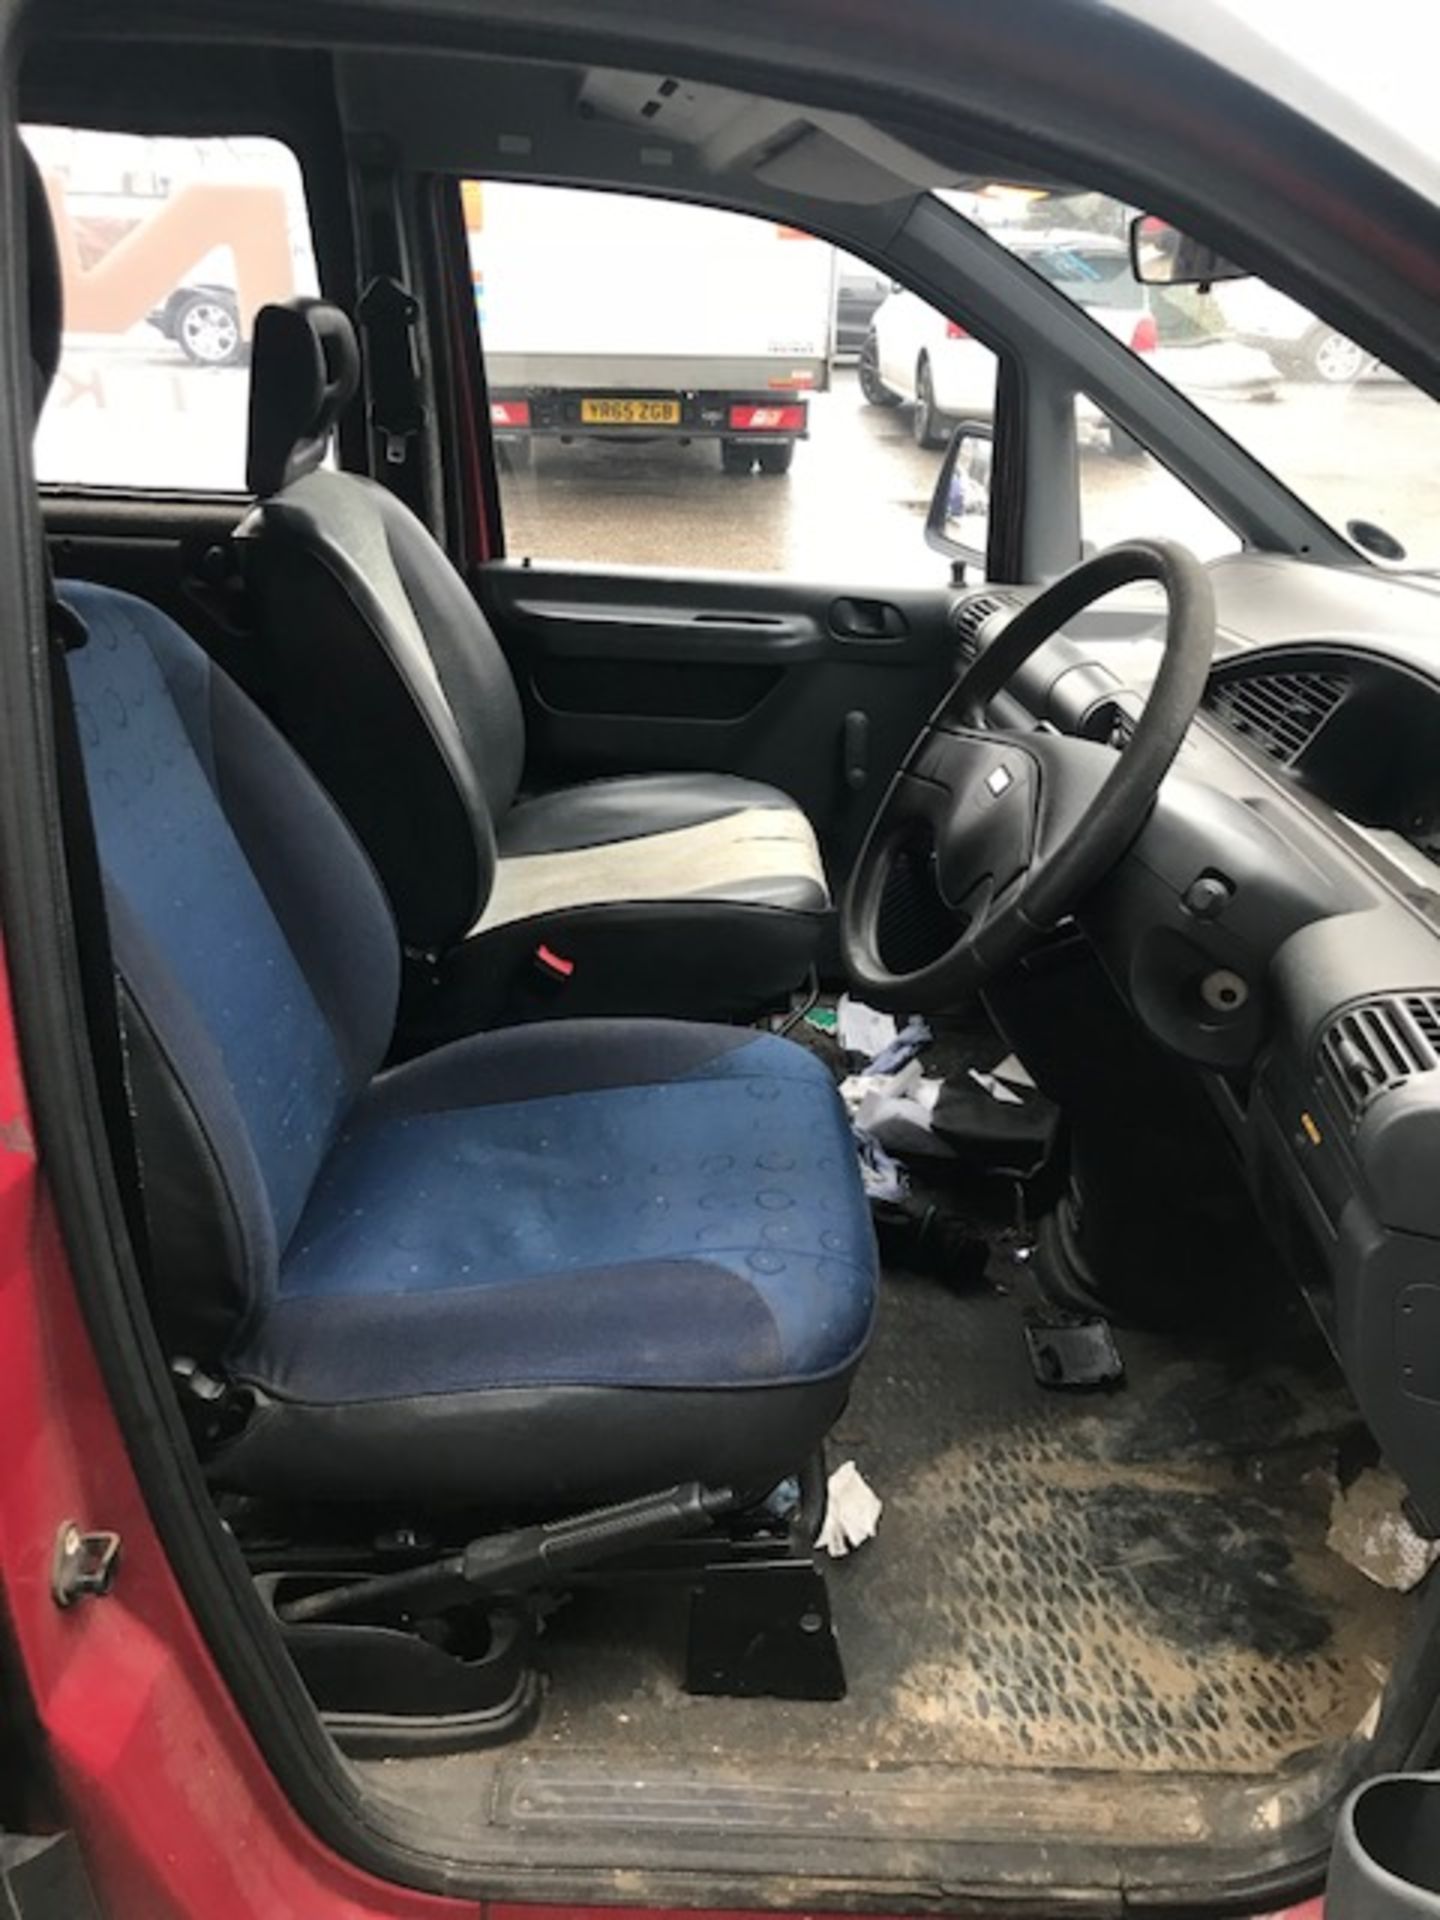 Black Fiat Scudo Panel Van | Reg: R531 EVT | 154,545 Miles - Image 6 of 13